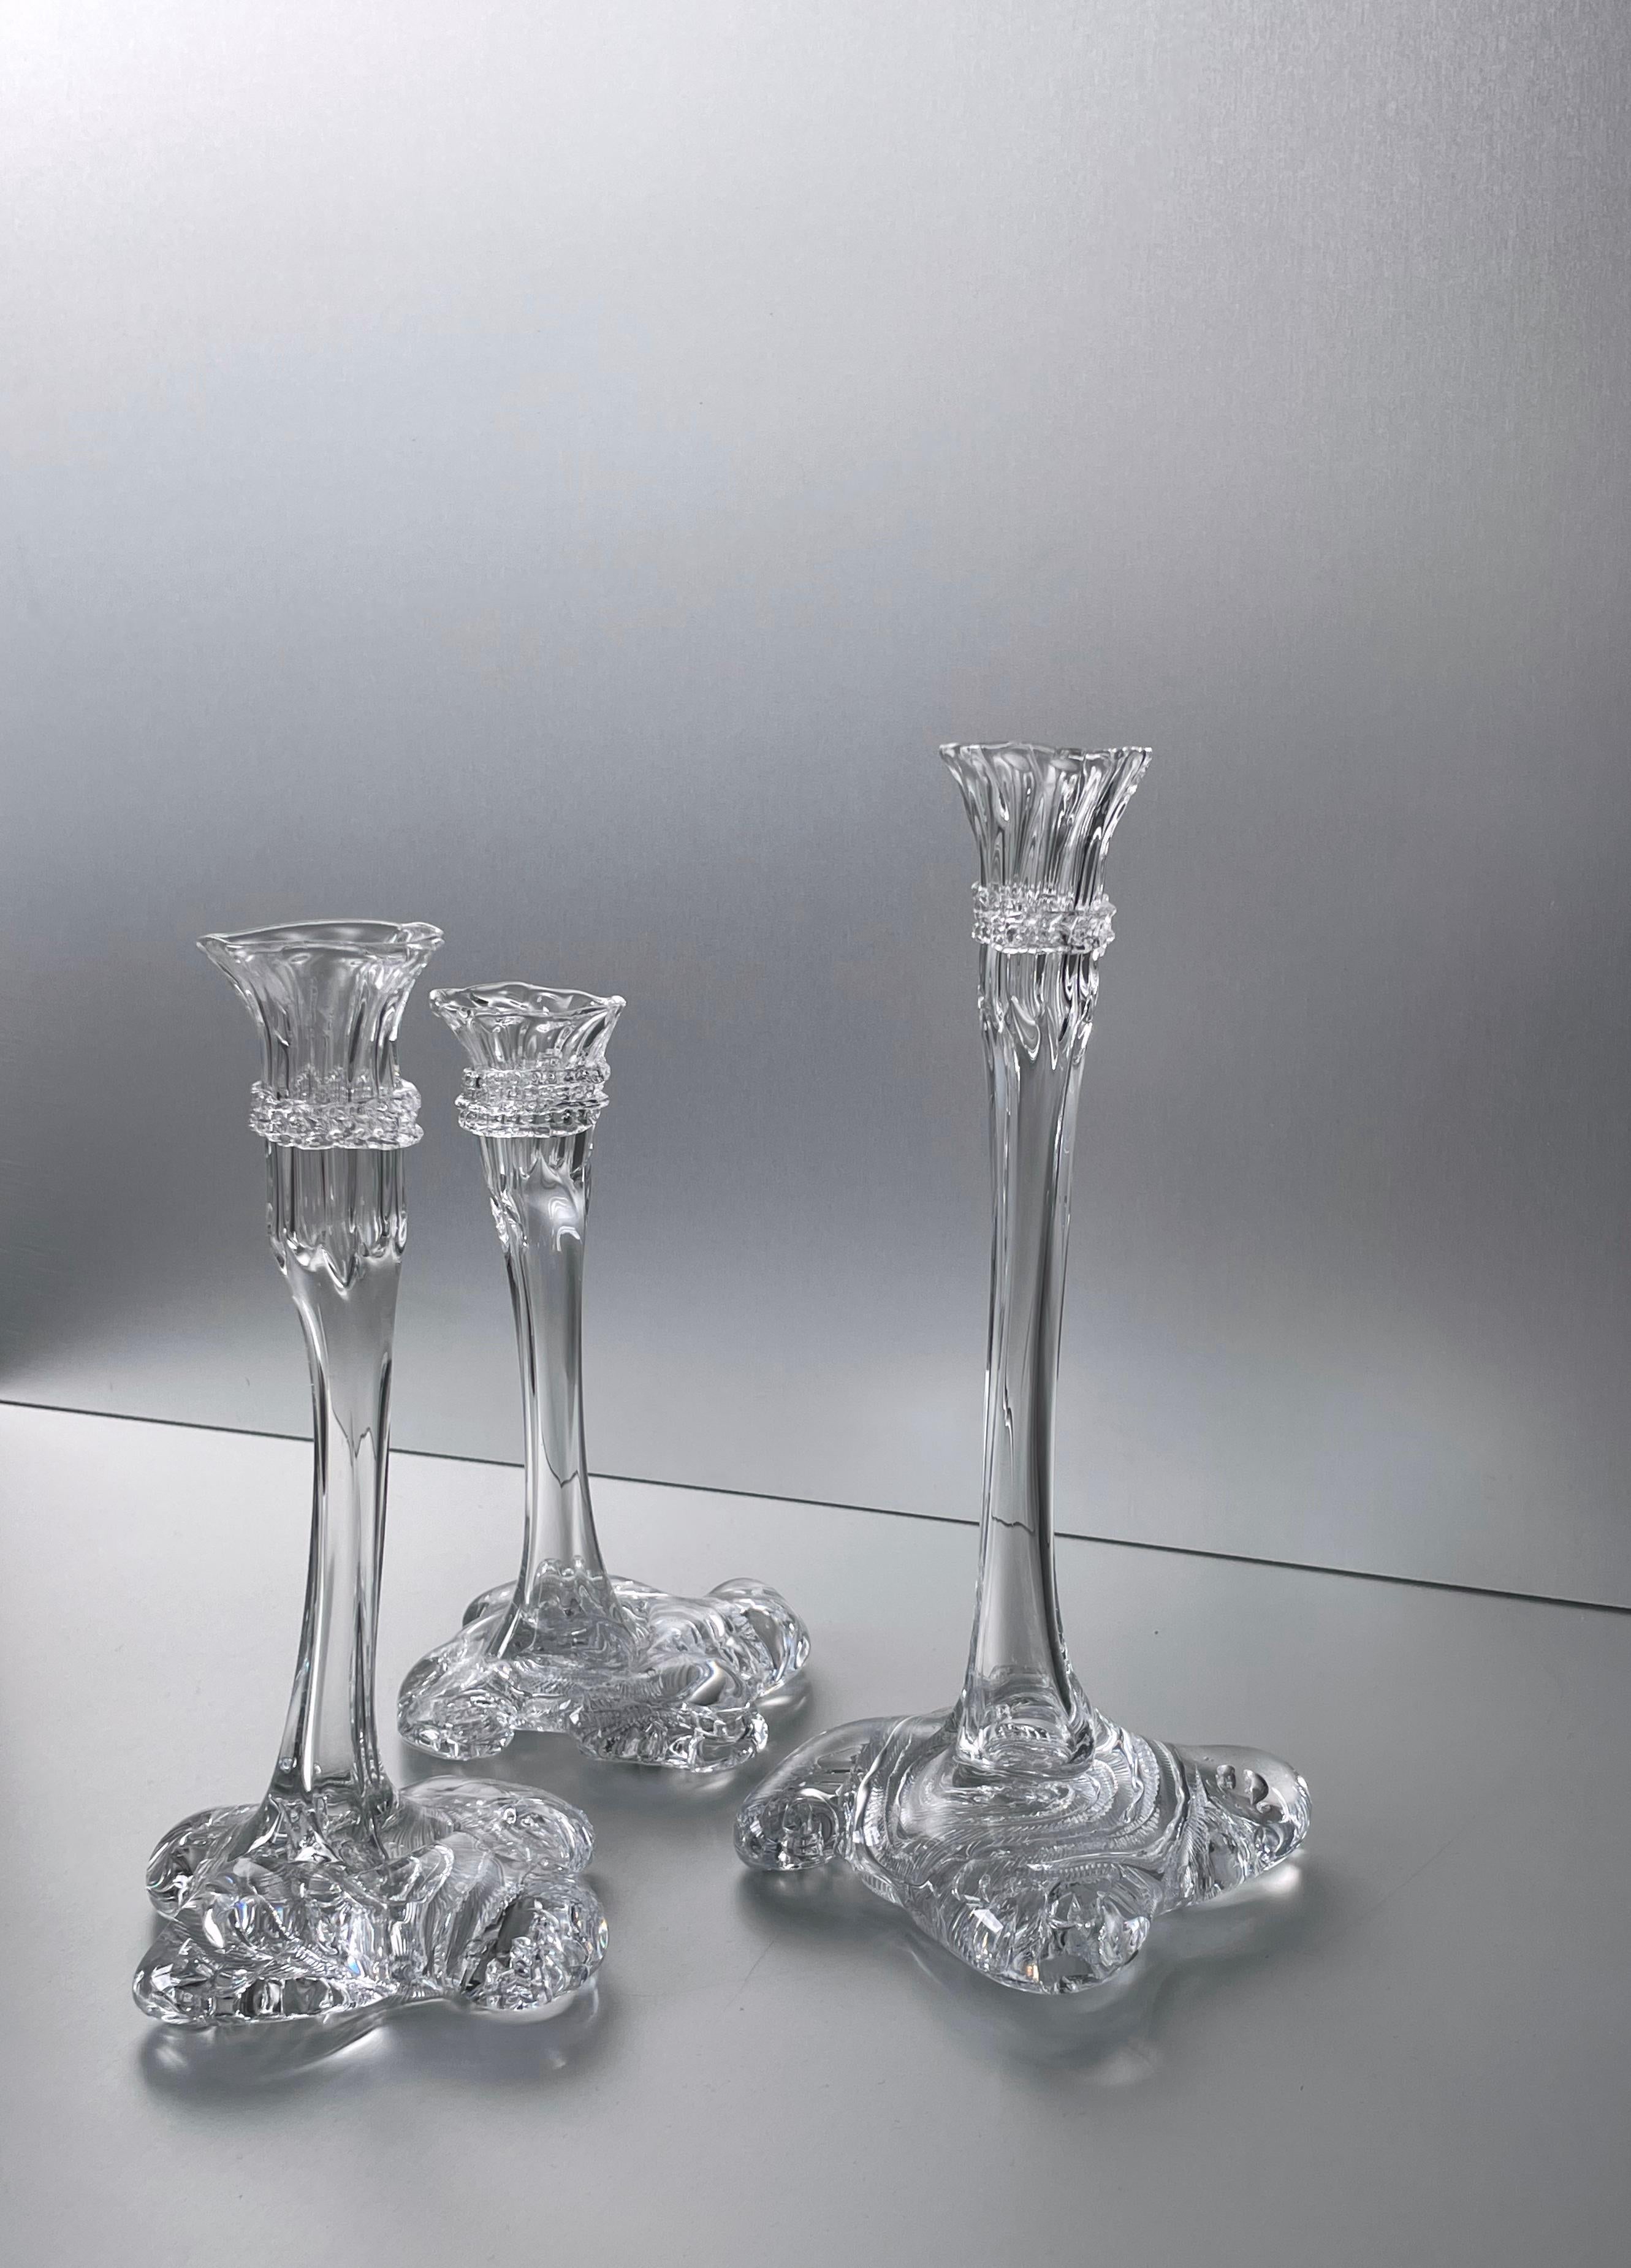 Alle Glaswaren werden von Alexander Kirkeby in Dänemark mundgeblasen. Jedes Stück ist daher ein Unikat und unterscheidet sich leicht in Größe und Dekoration.
47
Alexander Kirkeby ist Glasbläser und Designer und arbeitet im Bereich MATERIAL und